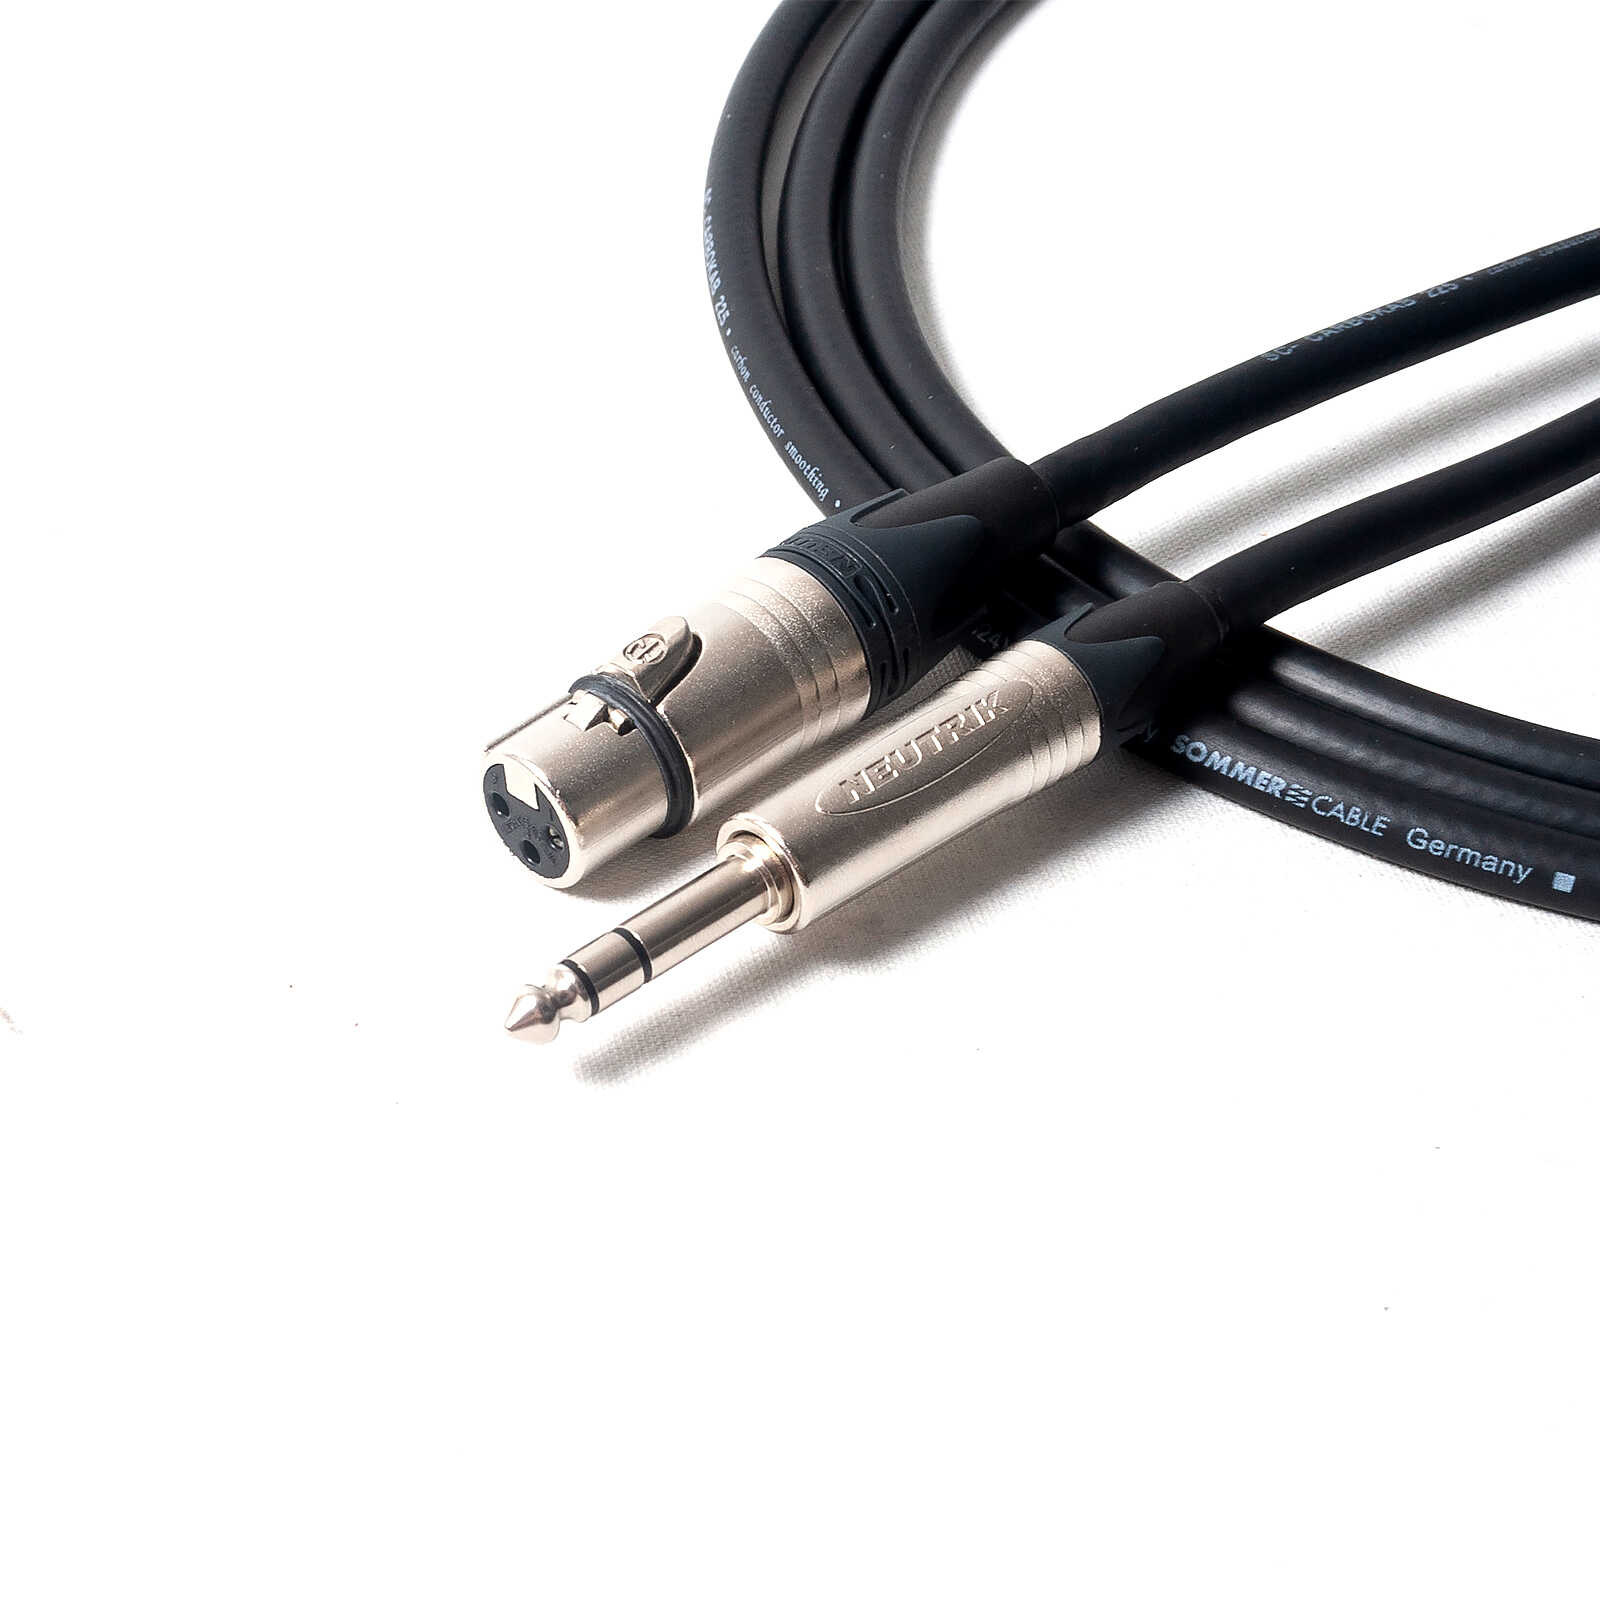 AC-XMXF/10 microphone cable XLR/XLR 10m